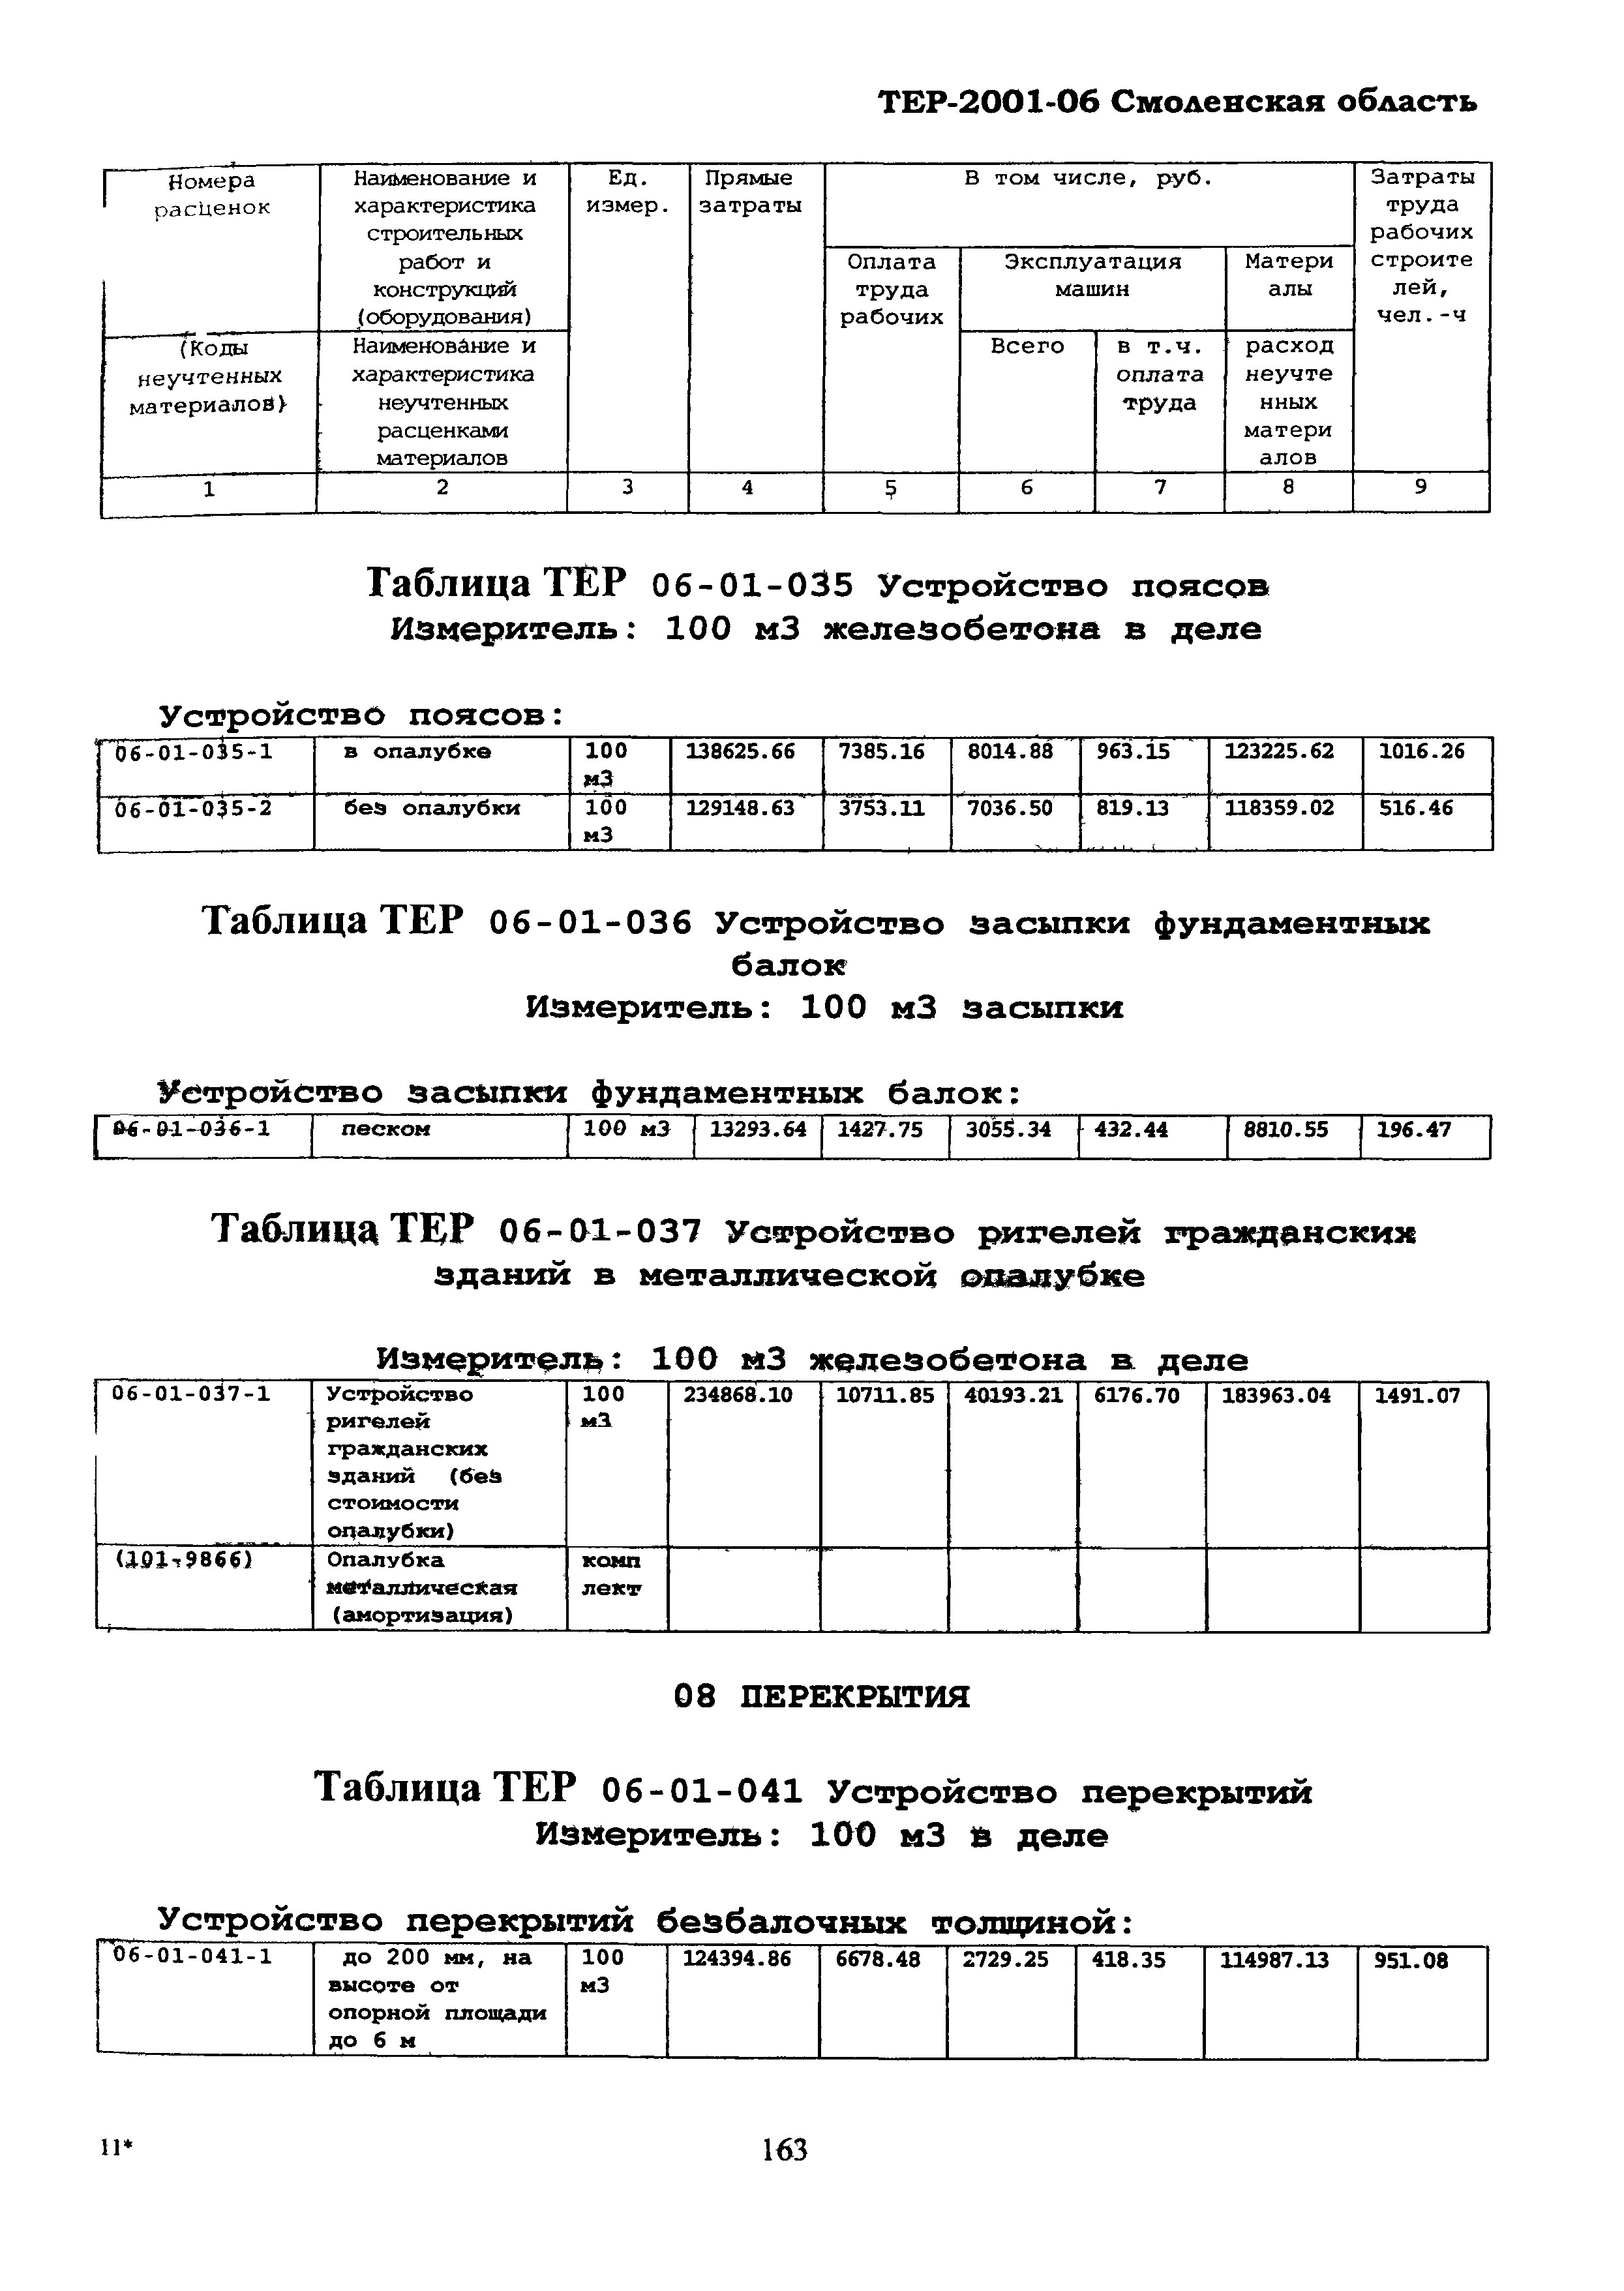 ТЕР Смоленской обл. 2001-06